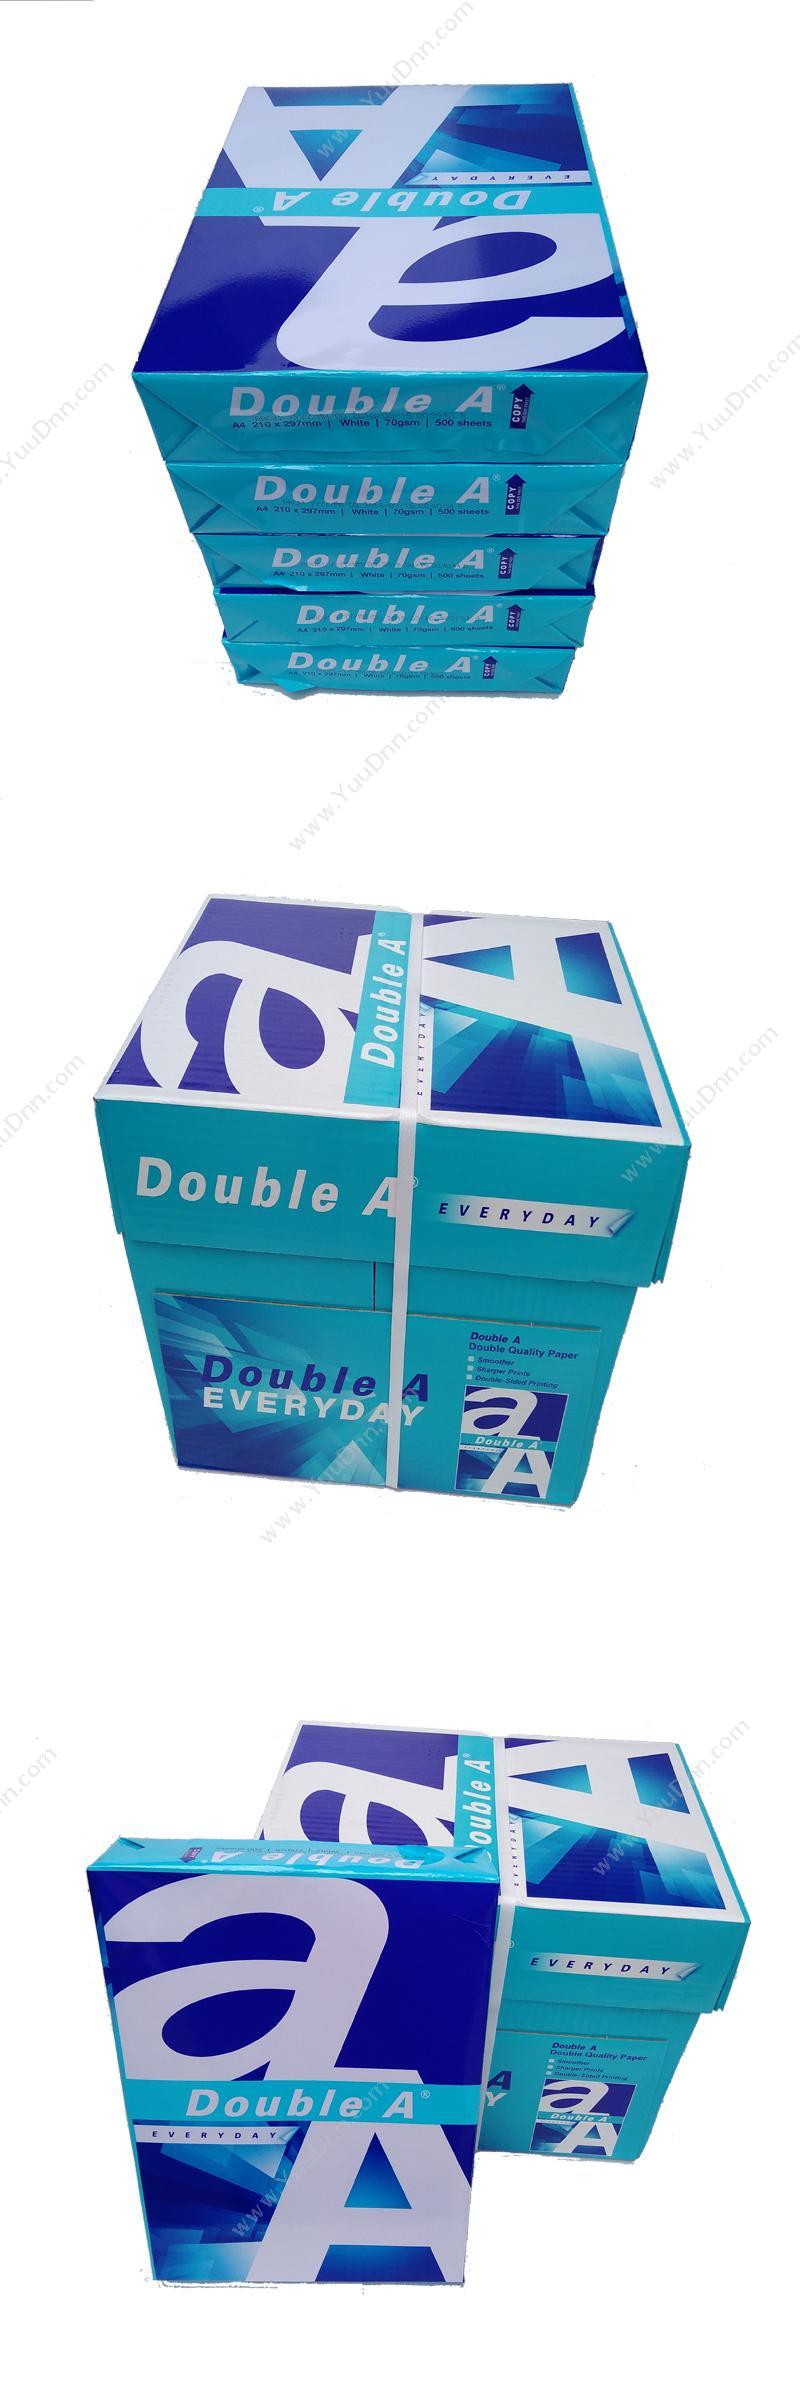 达伯埃 DoubleA 精品double A A4/70g 8包装 普通复印纸